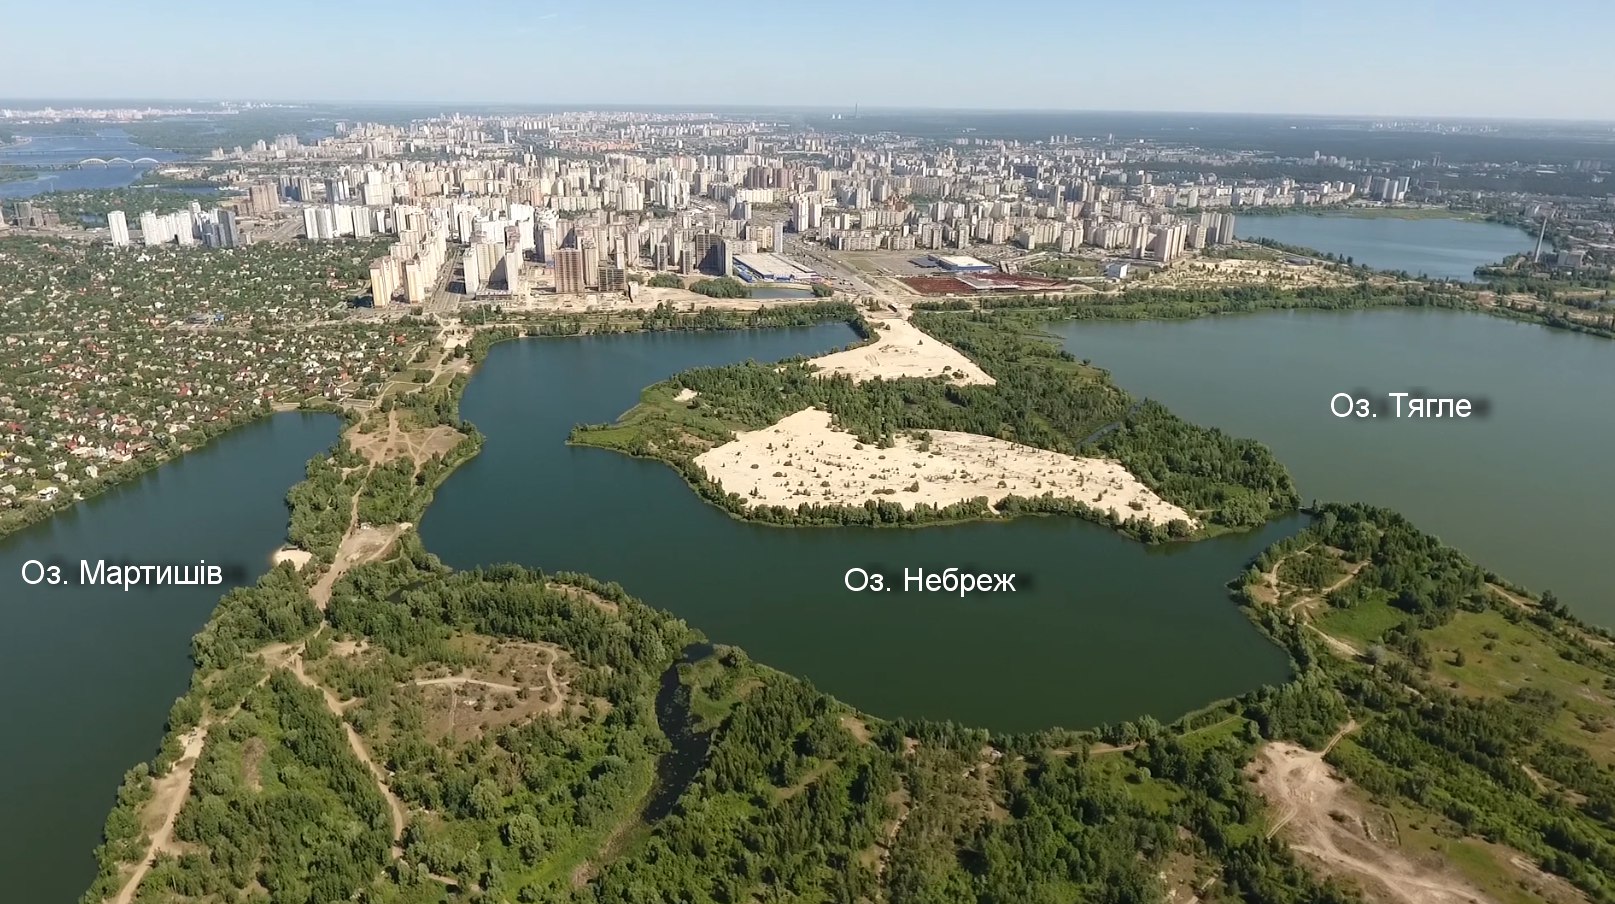 Почему застройка "Экопарка Осокорки" угрожает природе и разрушает экосистему Киева